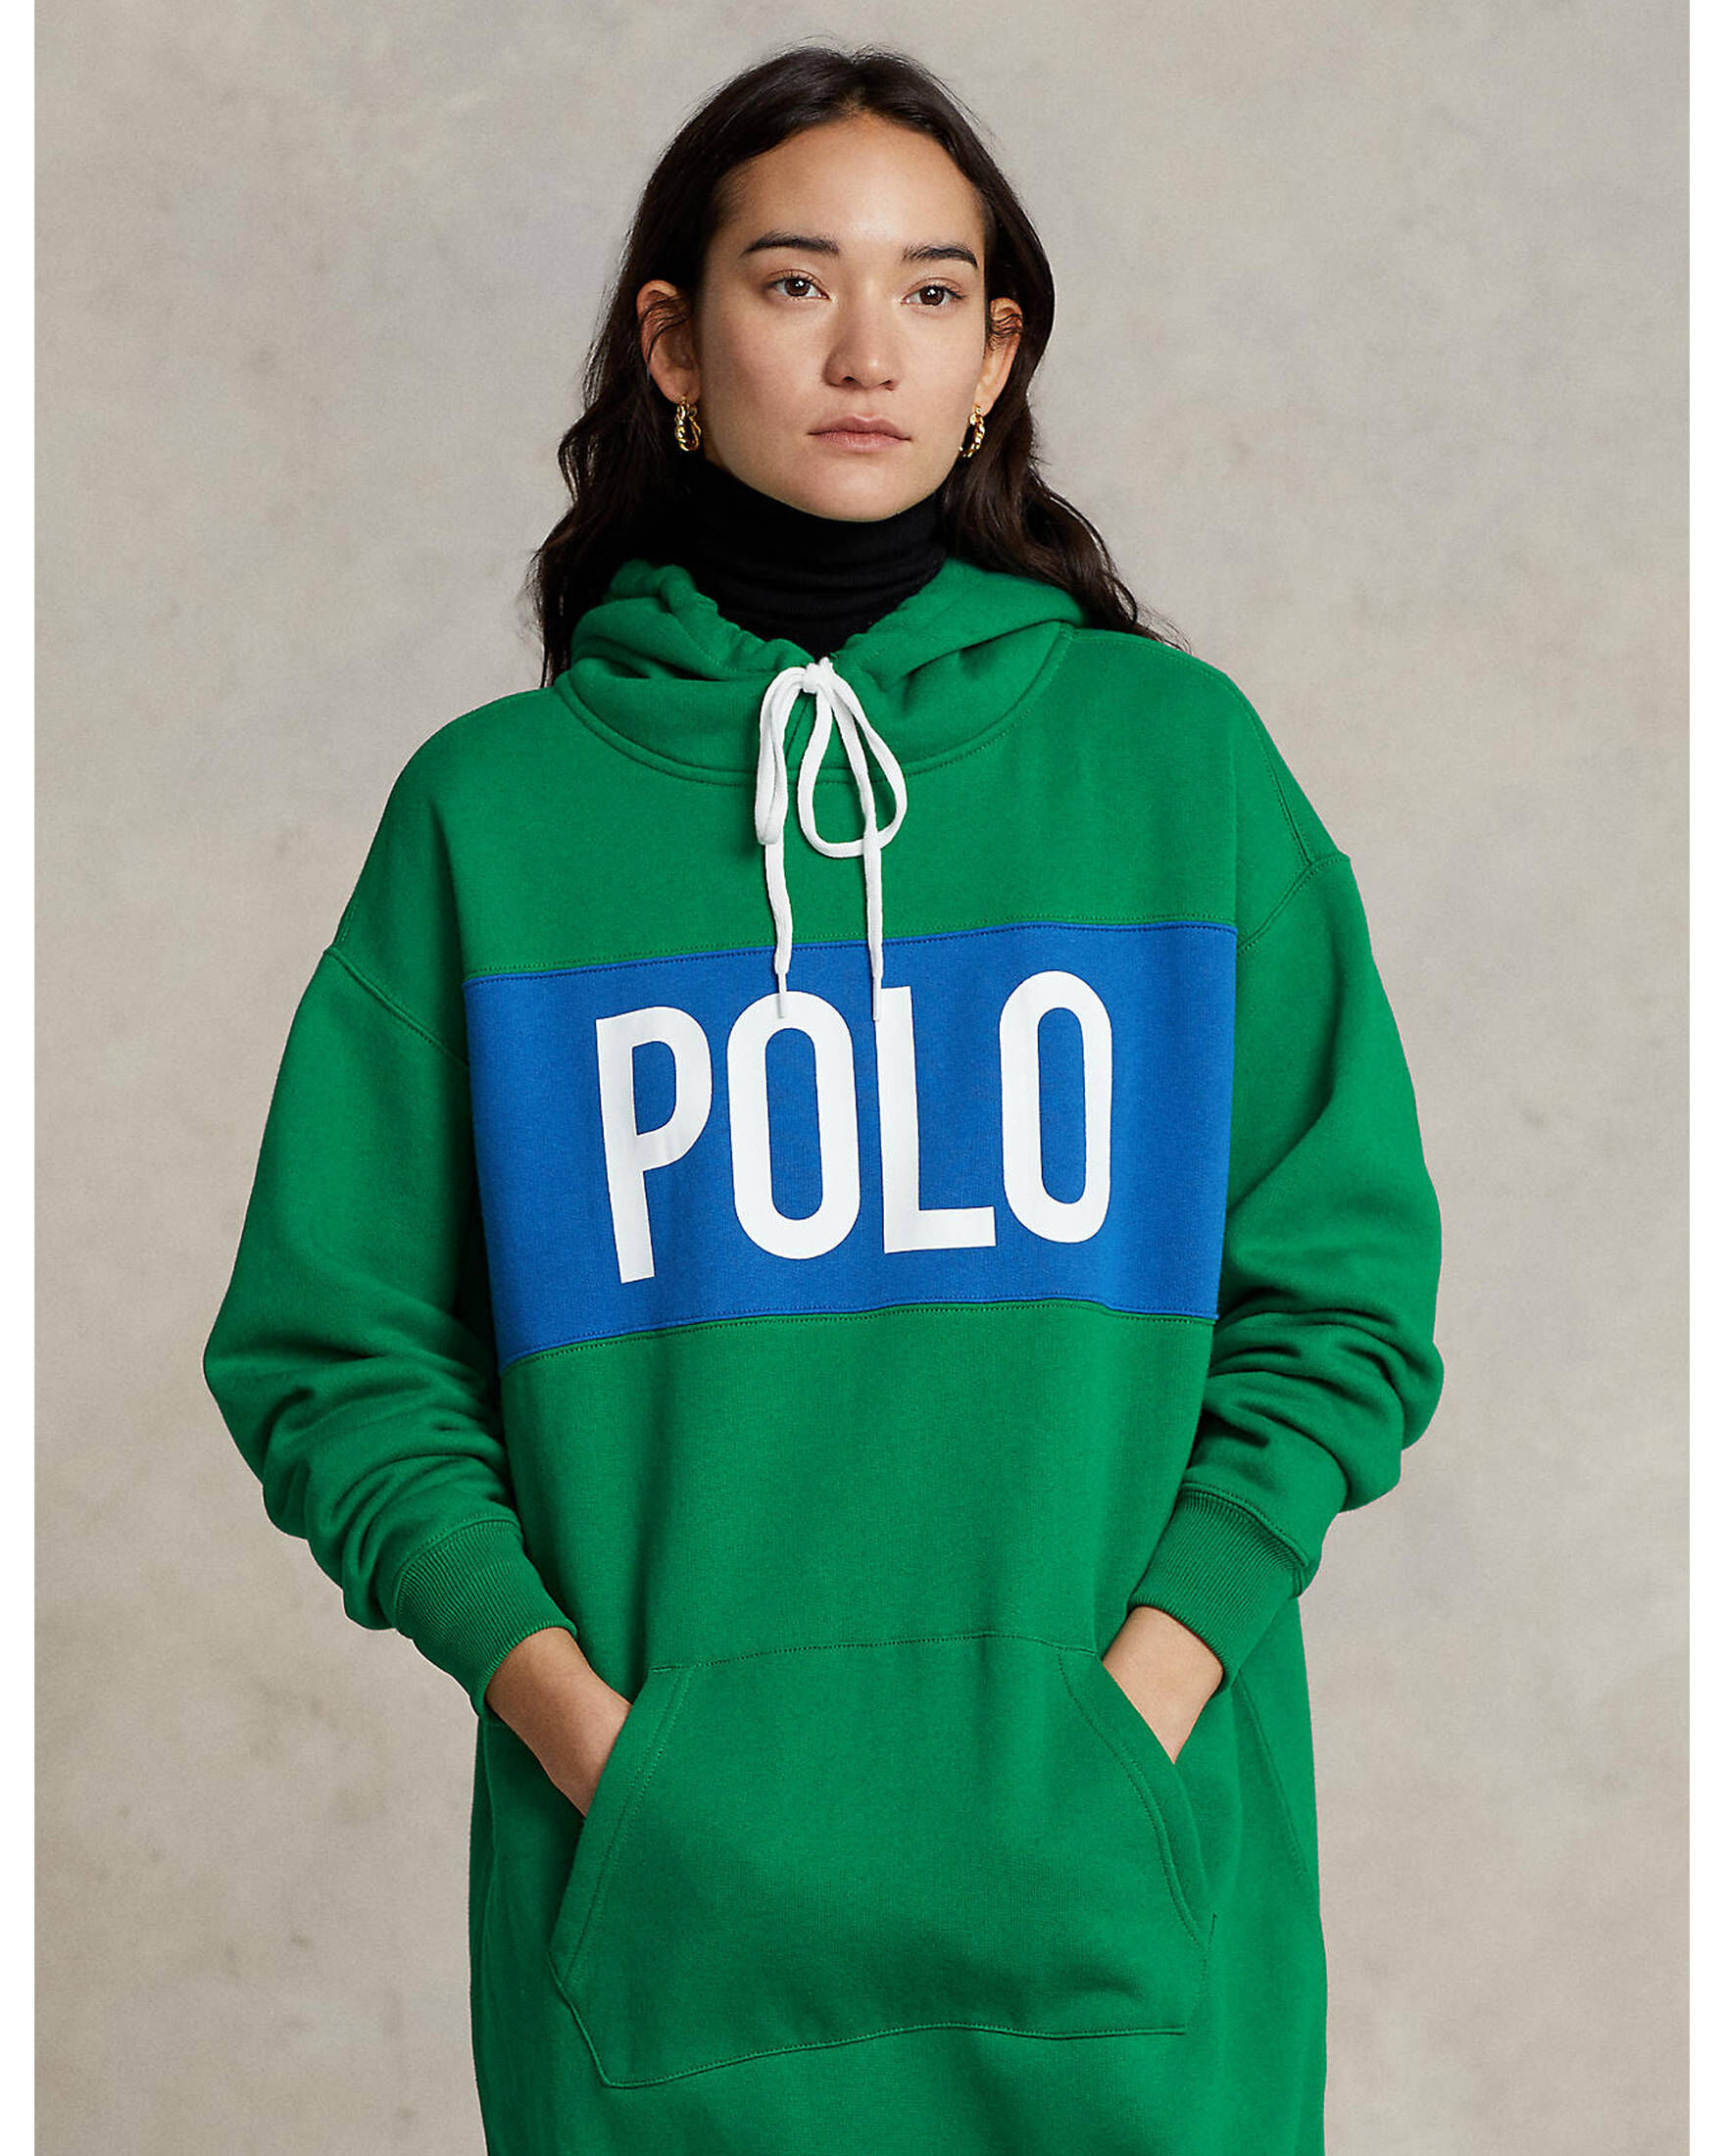 Polo Ralph Lauren Damen Sweatkleid mit Kapuze | engelhorn kaufen